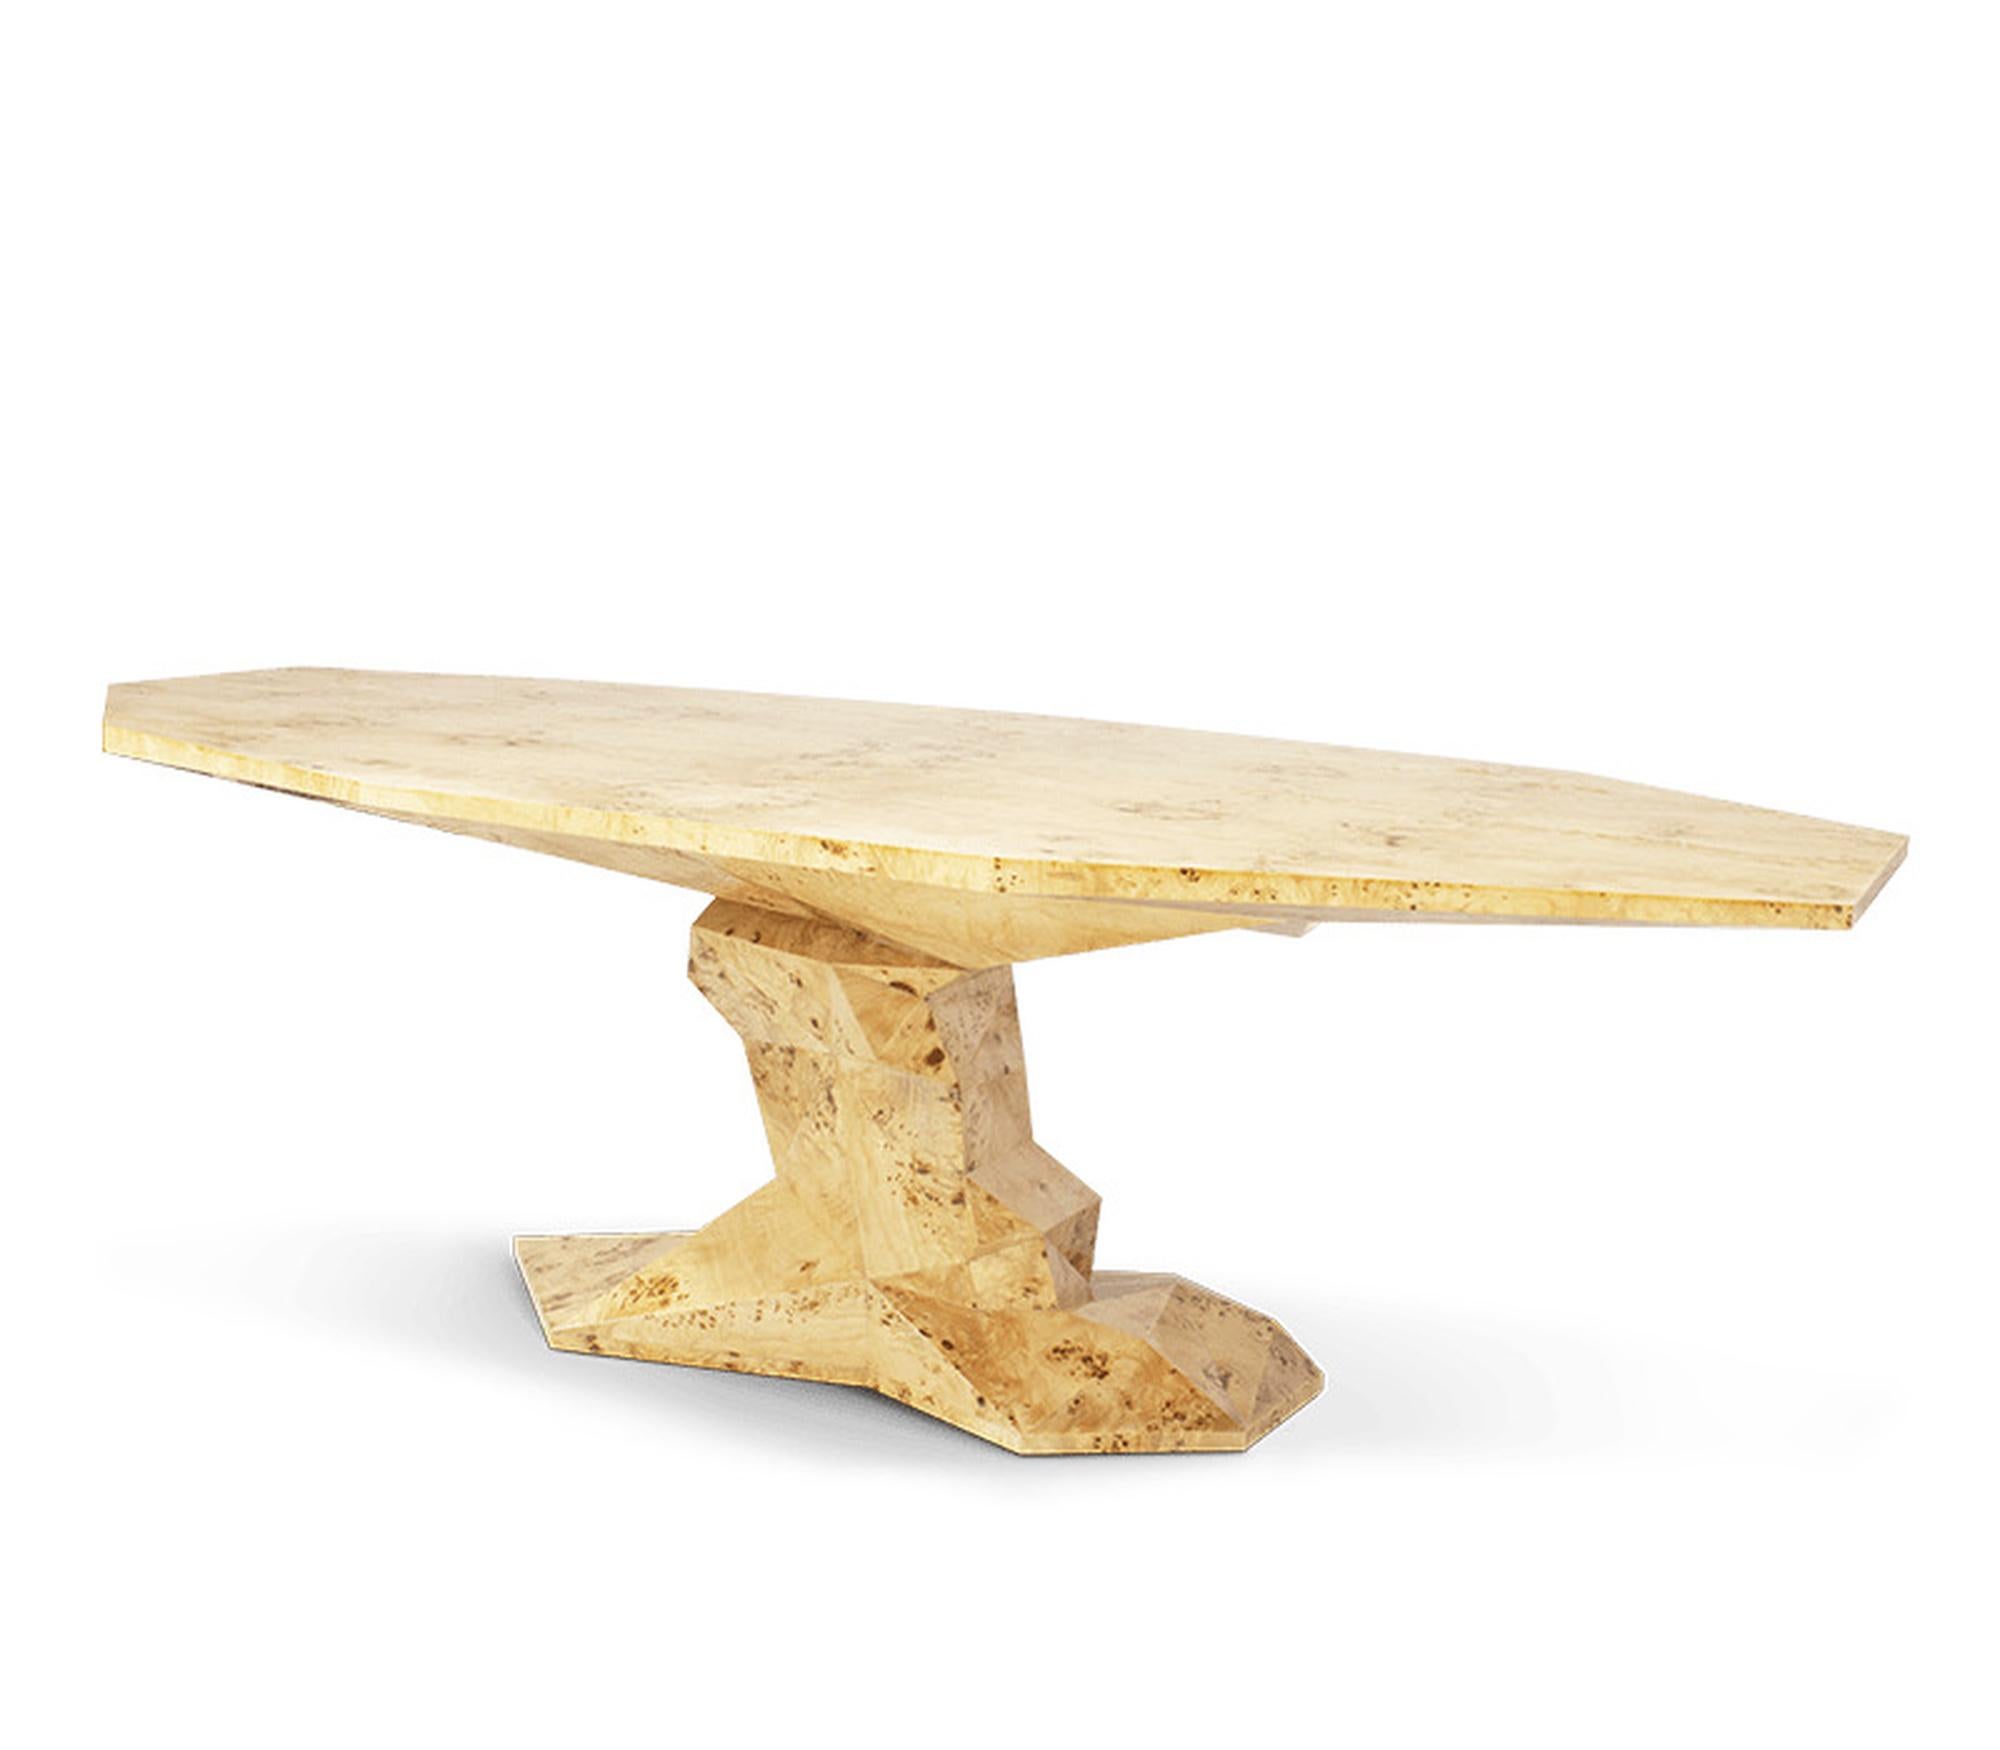 Moderner Tisch aus Holz „Acacia“

Handgefertigter Tisch aus Holz mit unregelmäßiger Oberfläche und einzigartiger Facettenform. In Pappelholzoptik/ hochglänzend regenwaldgrün lackiert
H: 77 cm, L: 200 cm, T: 125 cm
Produktionszeit 12 Wochen
ref Boca